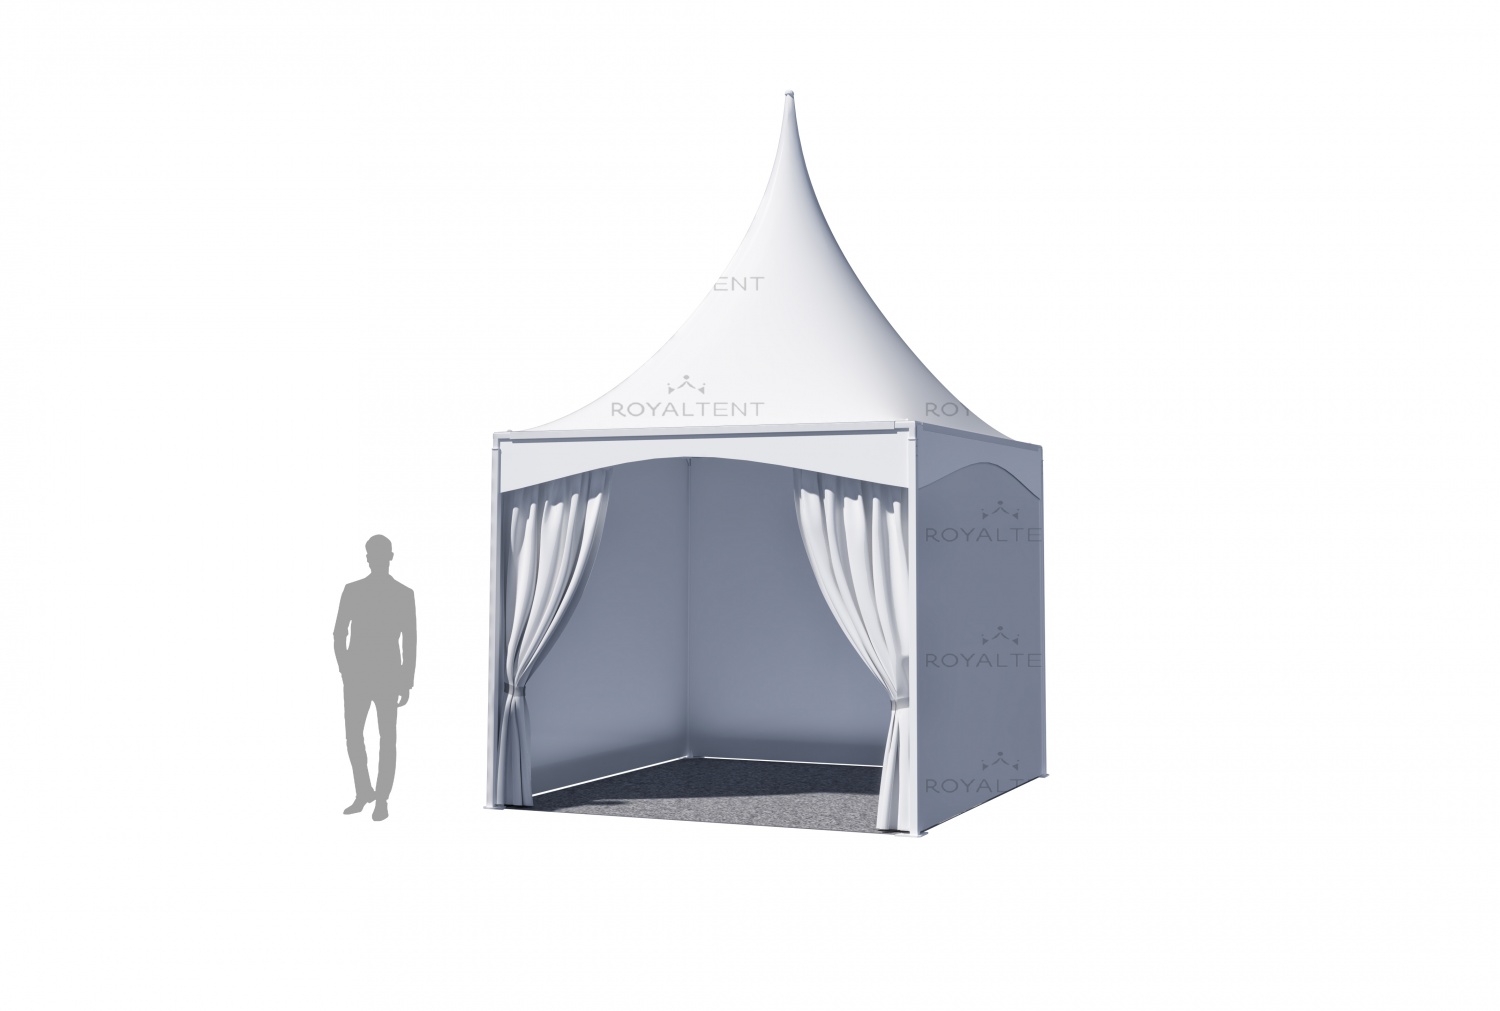 Описание изделия Этот компактный четырехгранный шатер удобен для ярмарок, в...